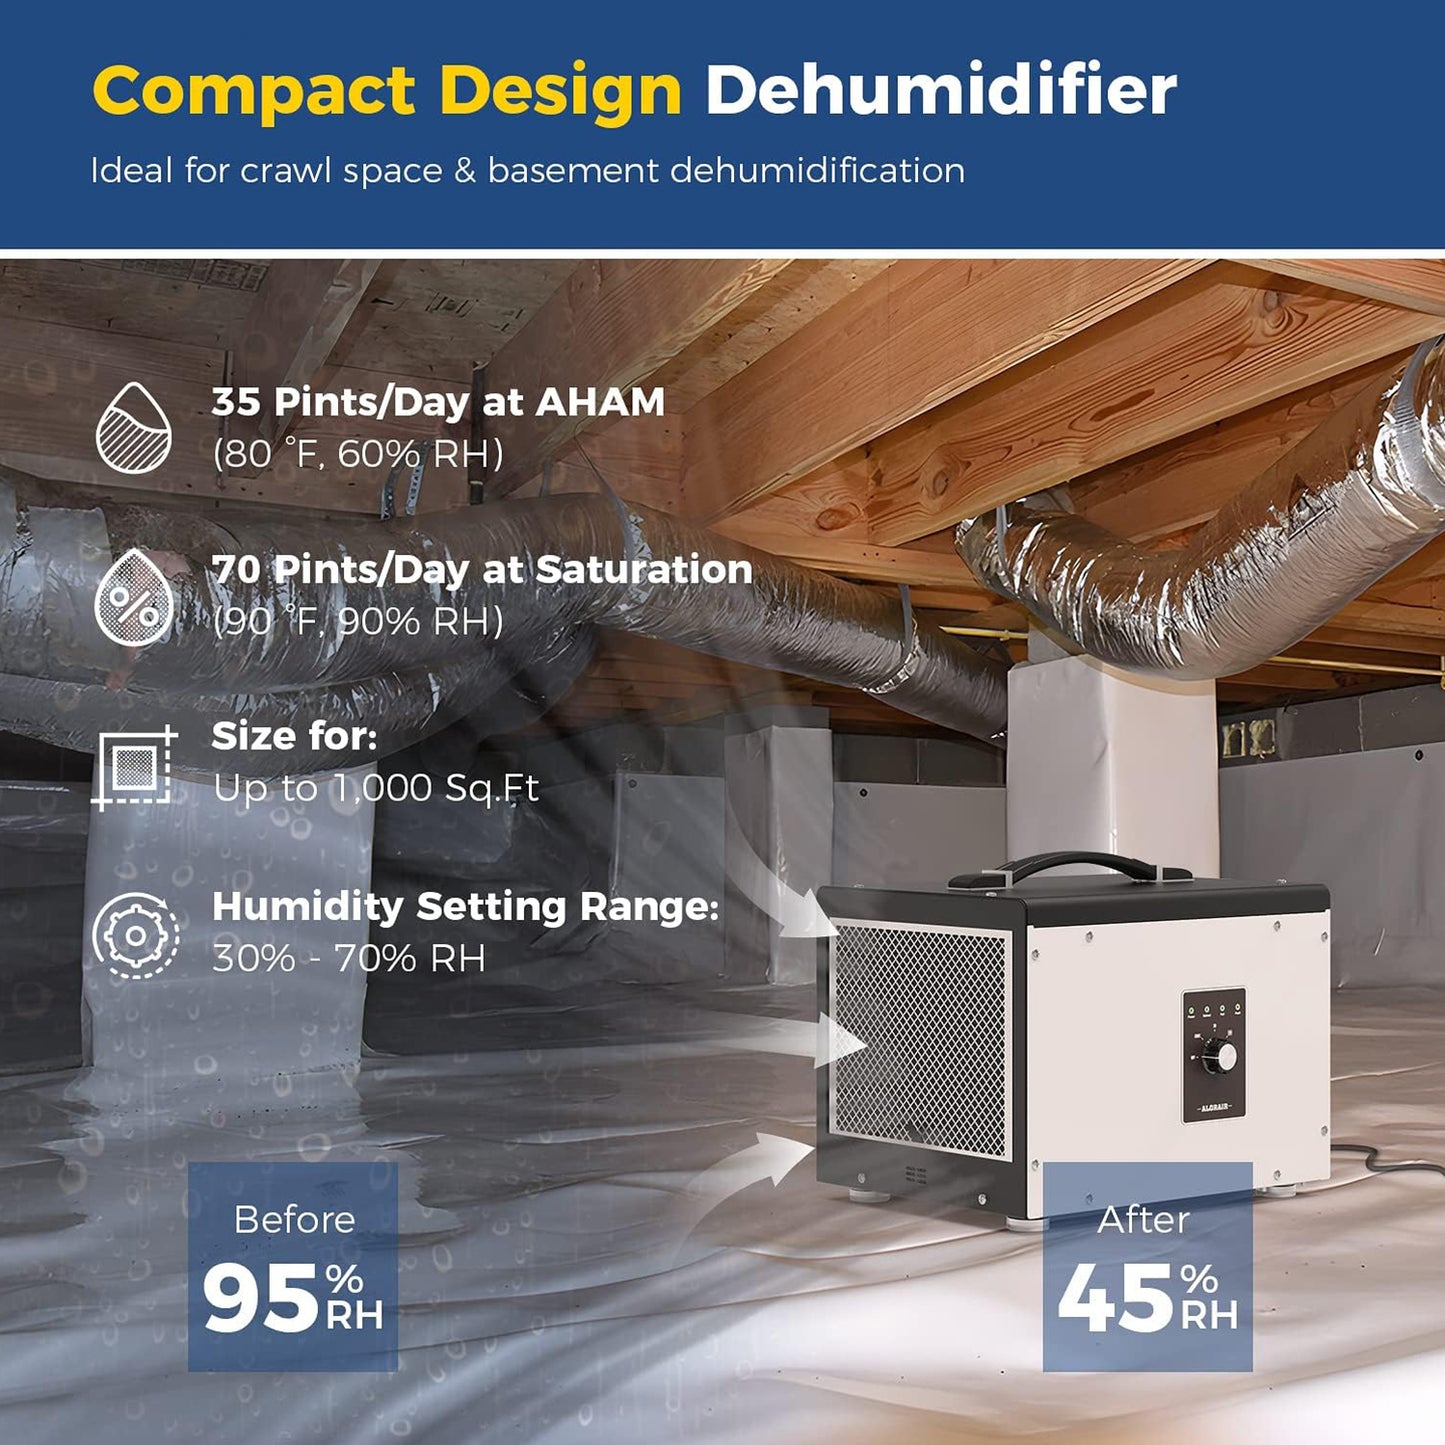 Compact design dehumidifier